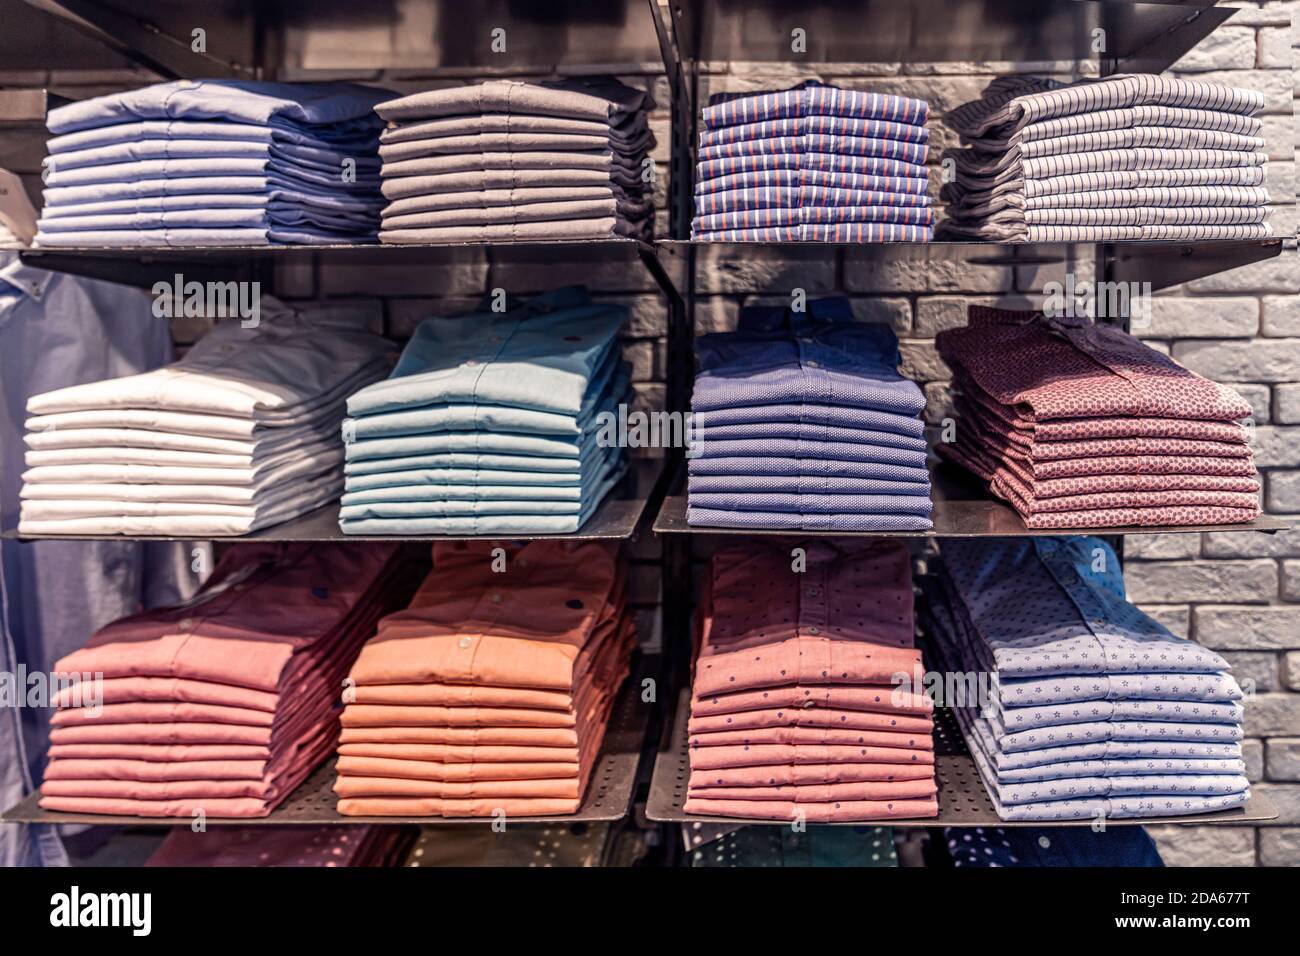 Vestiti esposti in negozio, camicie da uomo di diversi colori sullo scaffale, splendidamente e ordinatamente disposti in pile Foto Stock